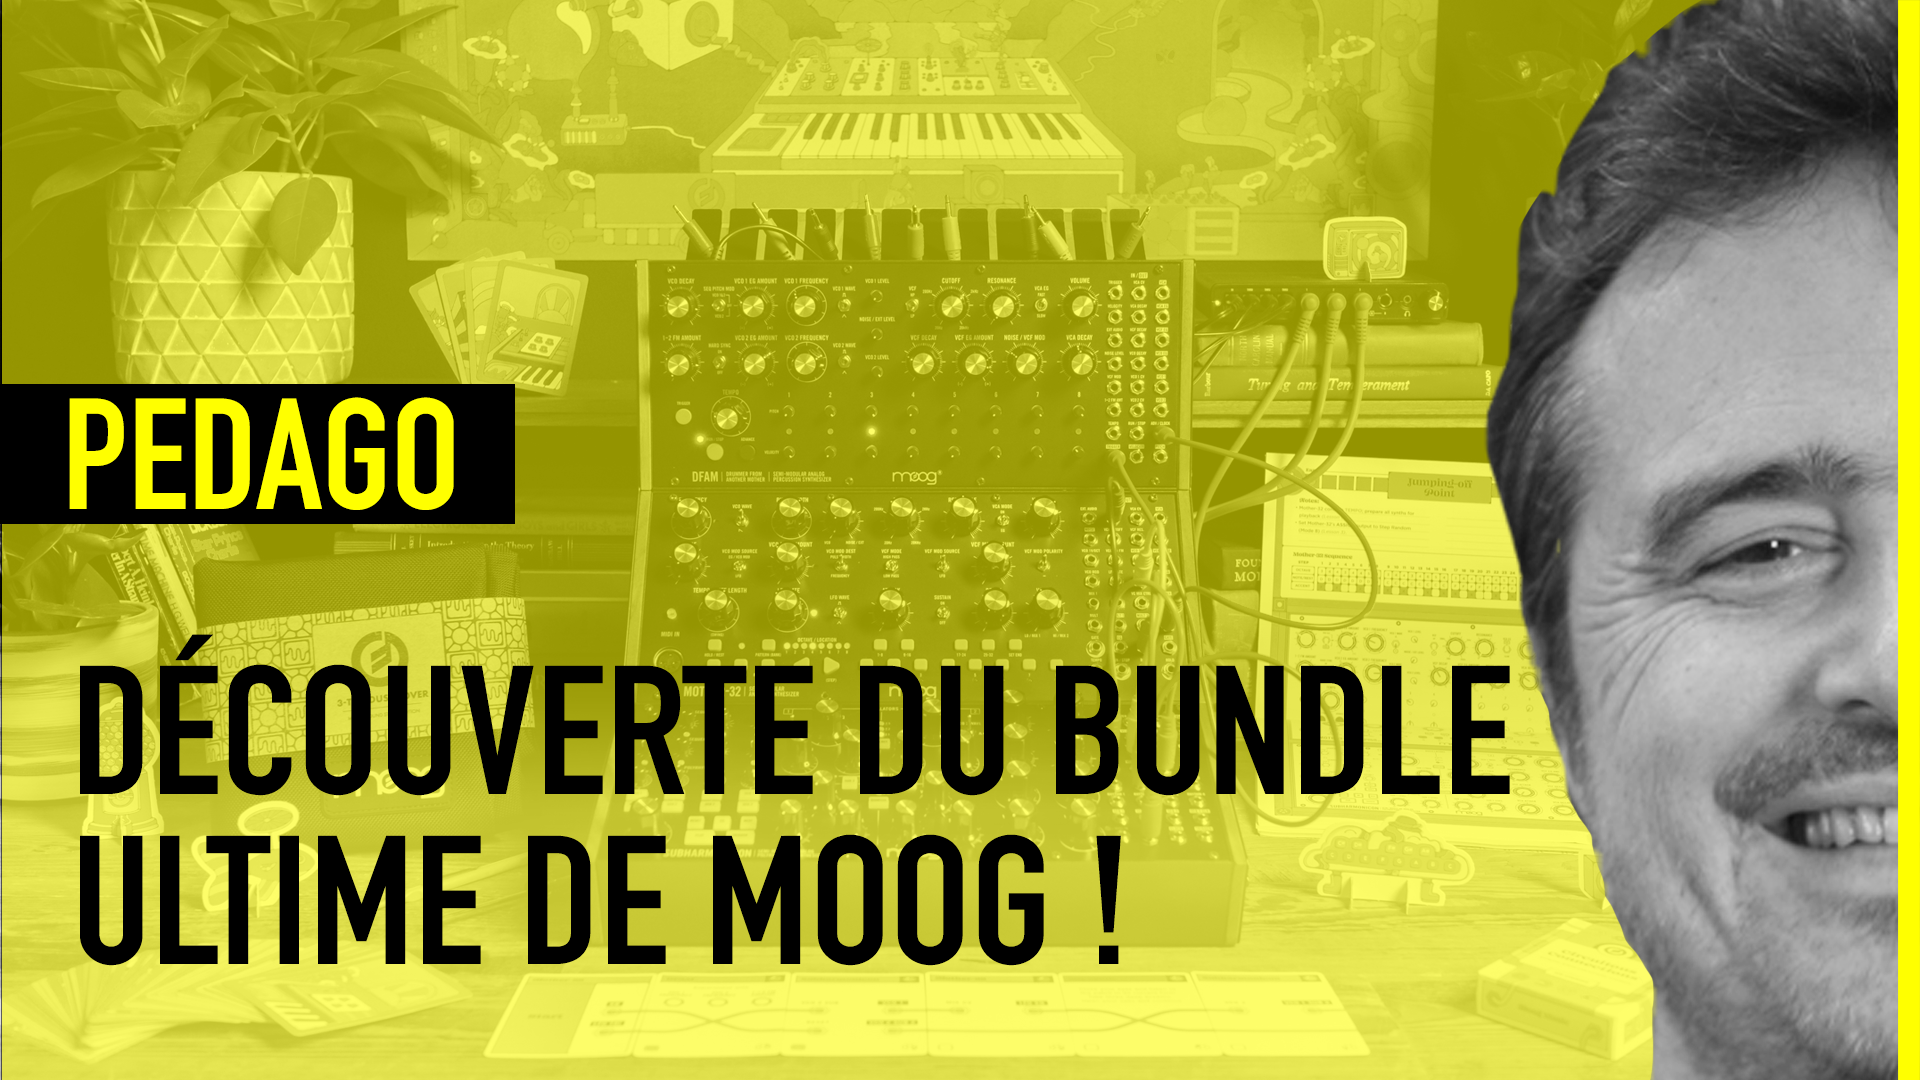 On découvre 3 synthés semi-modulaires de Moog !